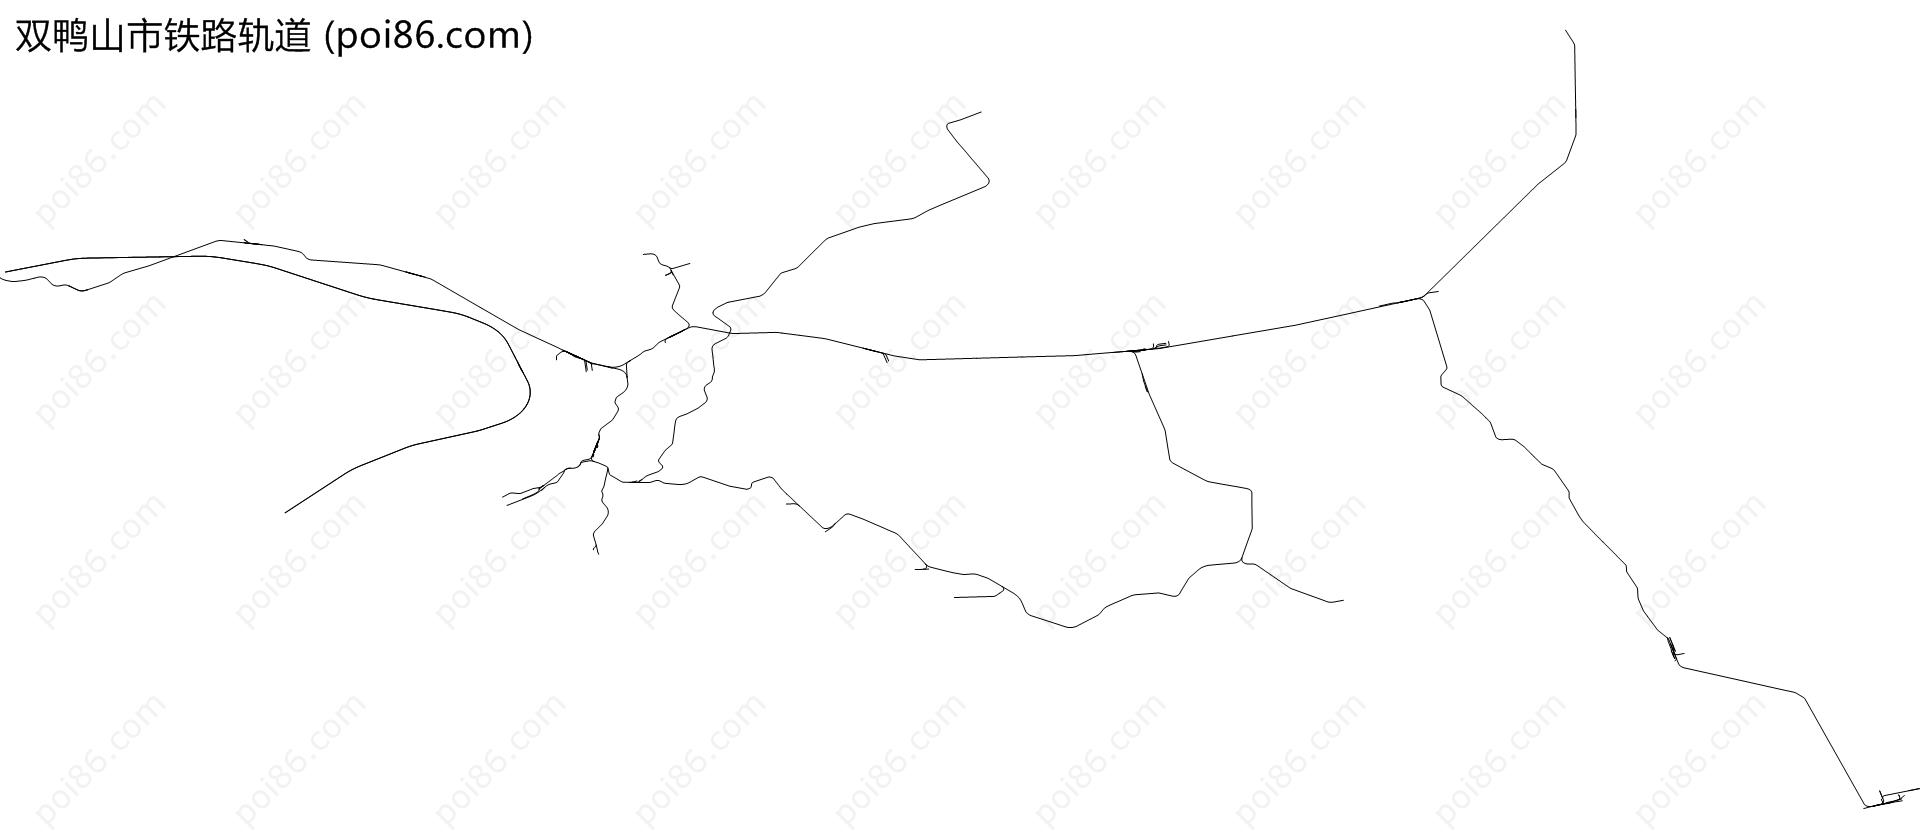 双鸭山市铁路轨道地图